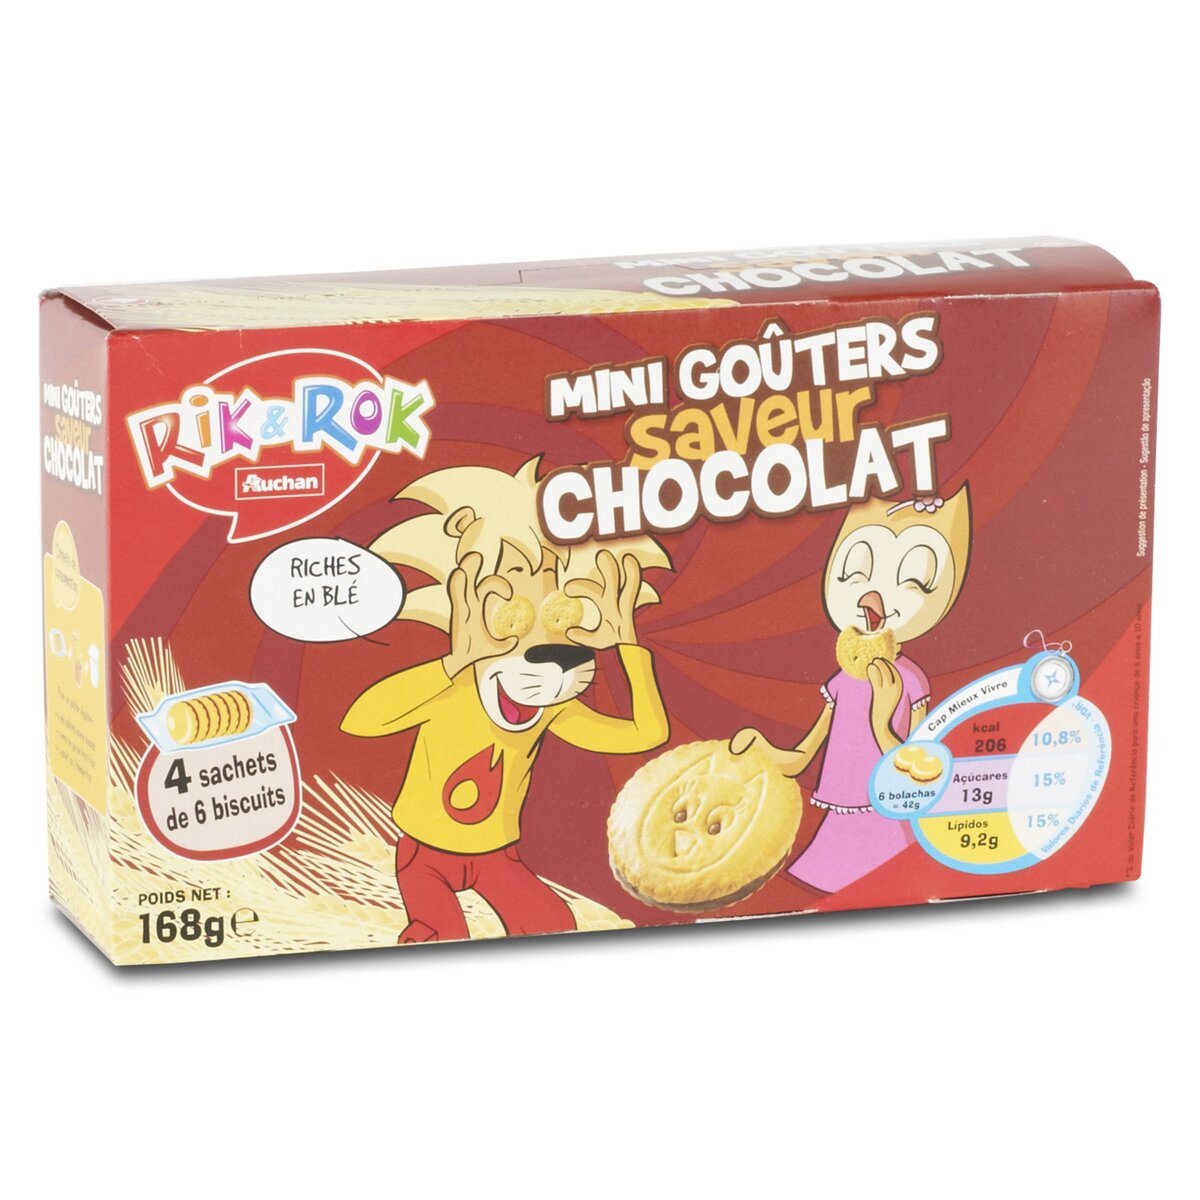 AUCHAN RIK & ROK Mini biscuits fourrés saveur chocolat, sachets fraîcheur 4x6 biscuits 168g